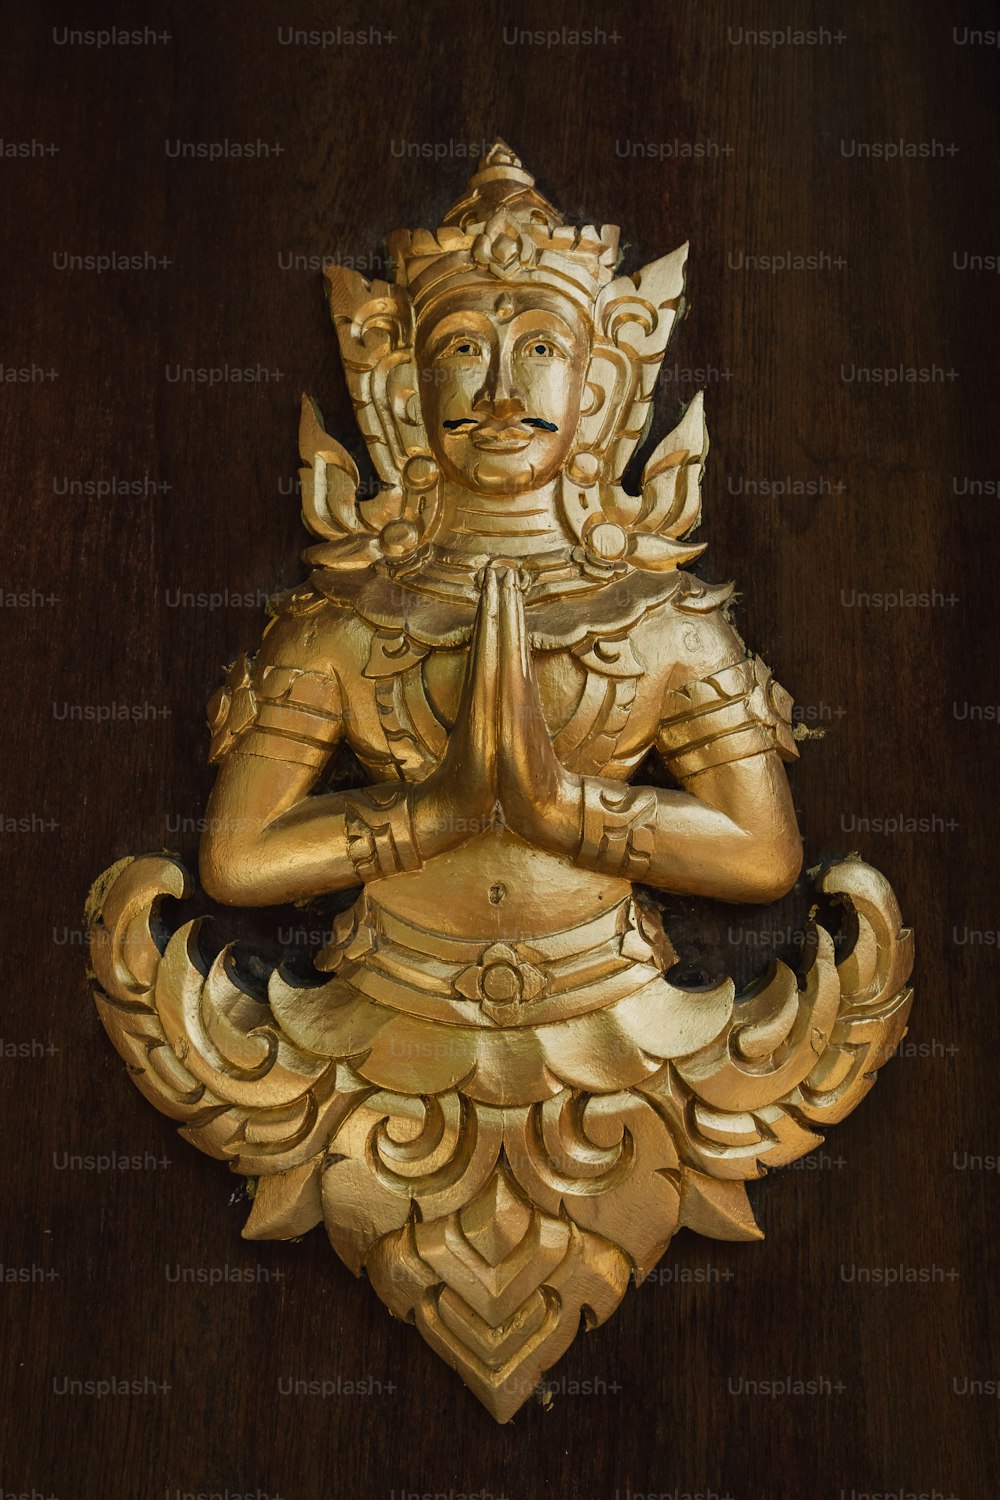 eine goldene Statue einer Person, die im Lotussitz sitzt